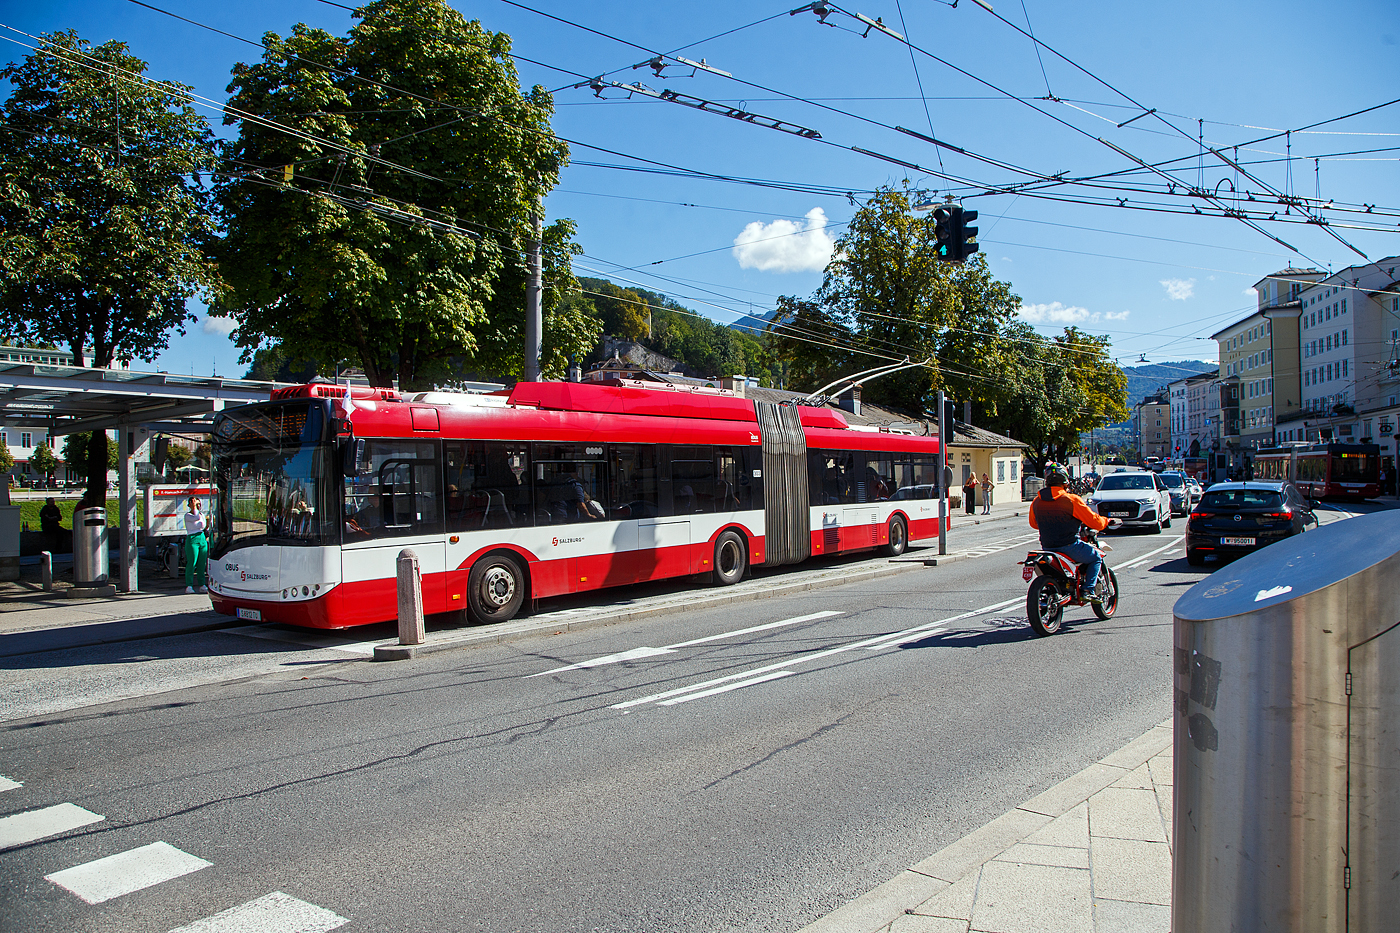 OBUS 349 (S 812 TU) der Salzburg AG ein Solaris Gelenktrolleybus vom Typ Solaris Trollino III 18 AC (Baujahr 2010 unter Fabriknummer 8802) am 12.09.2022 beim Ferdinand-Hanusch-Platz in Salzburg.

Die Obusse dieses Typs wurden ab Herbst 2009 bis 2011 wurden in Dienst gestellt. Die Fahrzeuge haben wie ihre Vorgängermodelle vom Typ Van Hool AG 300 T eine Länge von 18 Metern und bieten dabei 38 Sitzplätze und knapp 100 Stehplätze an. Der in den Bussen verbaute Skoda Elektric-Motor leistet 250 kW. Der polnische Lieferant Solaris stattet die Busse mit zusätzlichen Hilfsdieselmotoren aus, damit Ausfälle der Oberleitung oder der Elektronik des Busses zumindest ein Aus-dem-Gefahrenbereich-Fahren des Fahrzeugs ermöglichen.

Die OBusse vom Typ Solaris Trollino III 18 AC tragen die SLB-Nummern von 301 bis 315.
